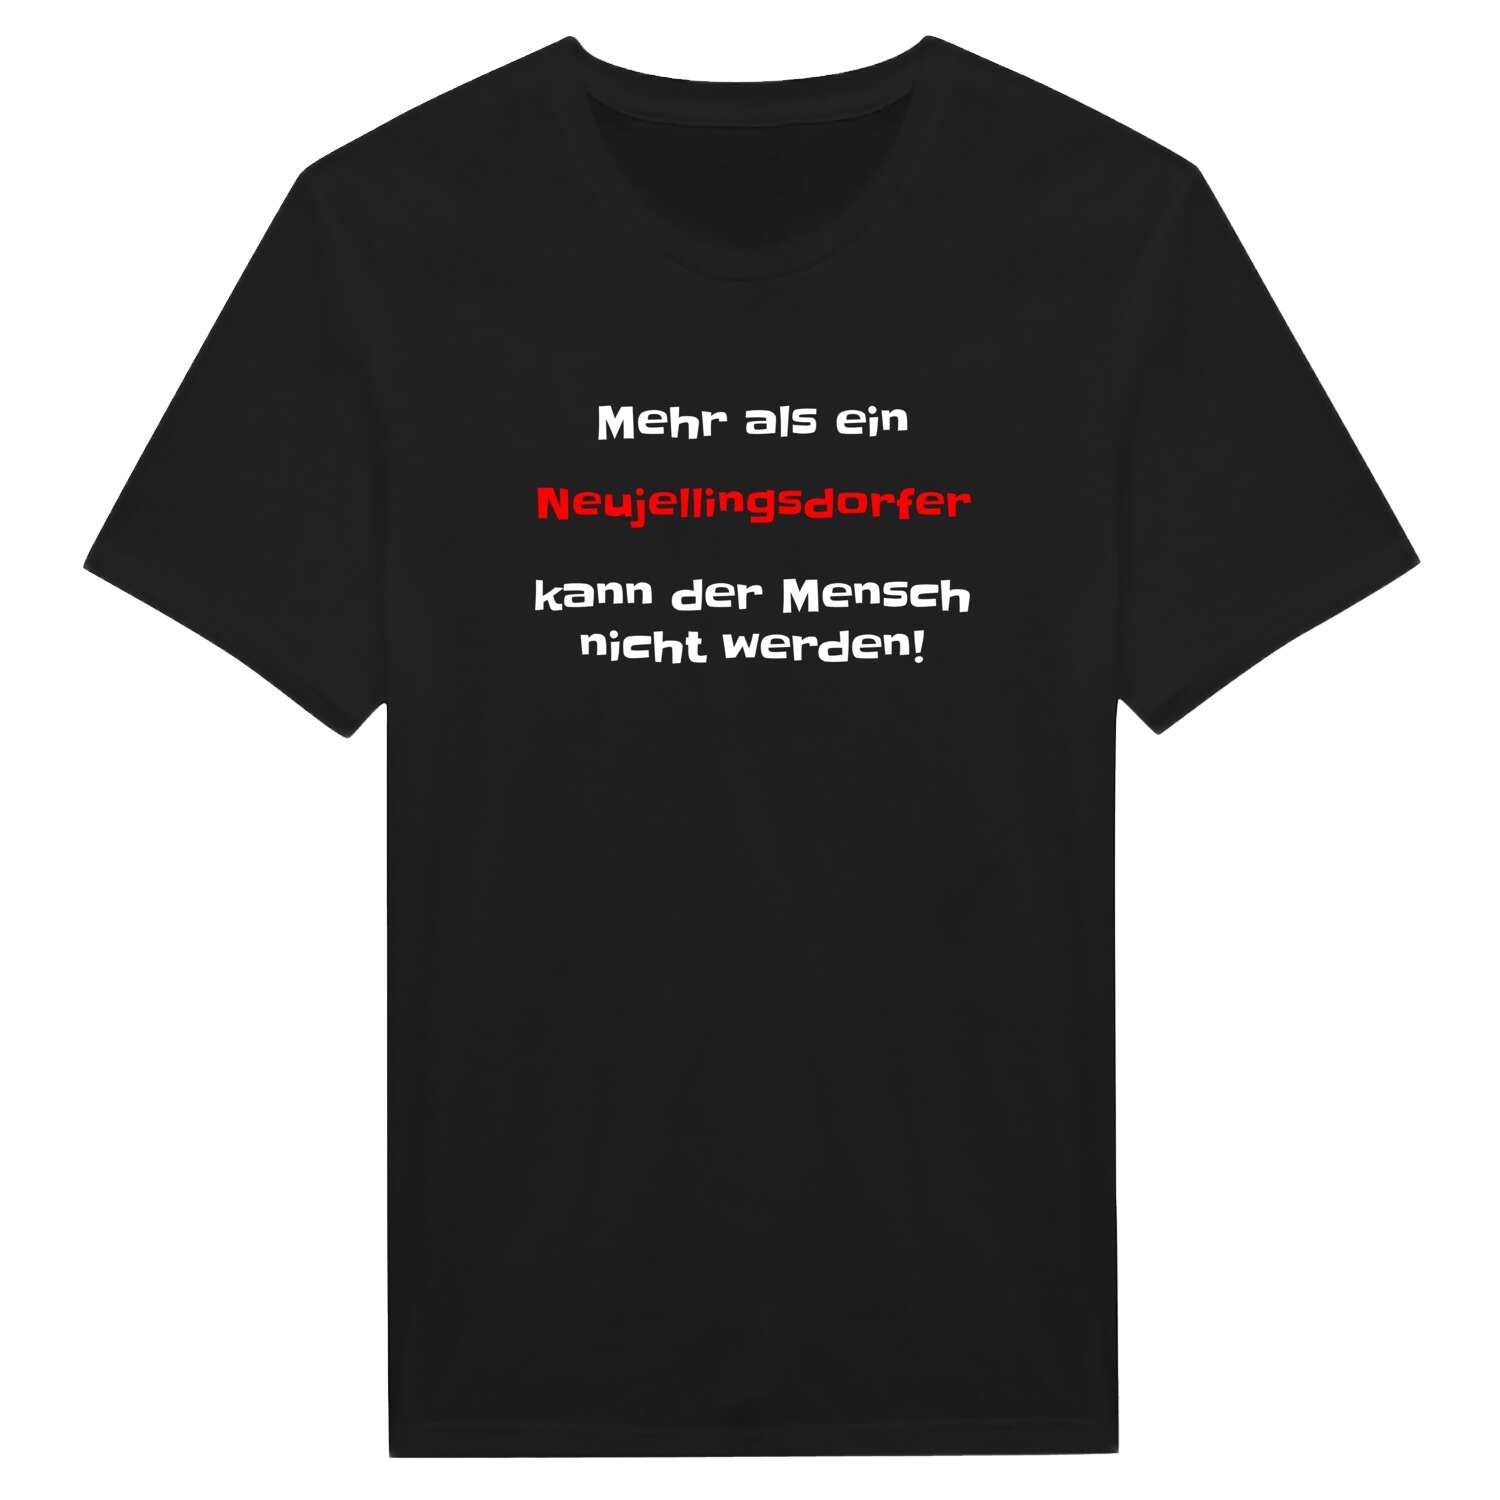 Neujellingsdorf T-Shirt »Mehr als ein«